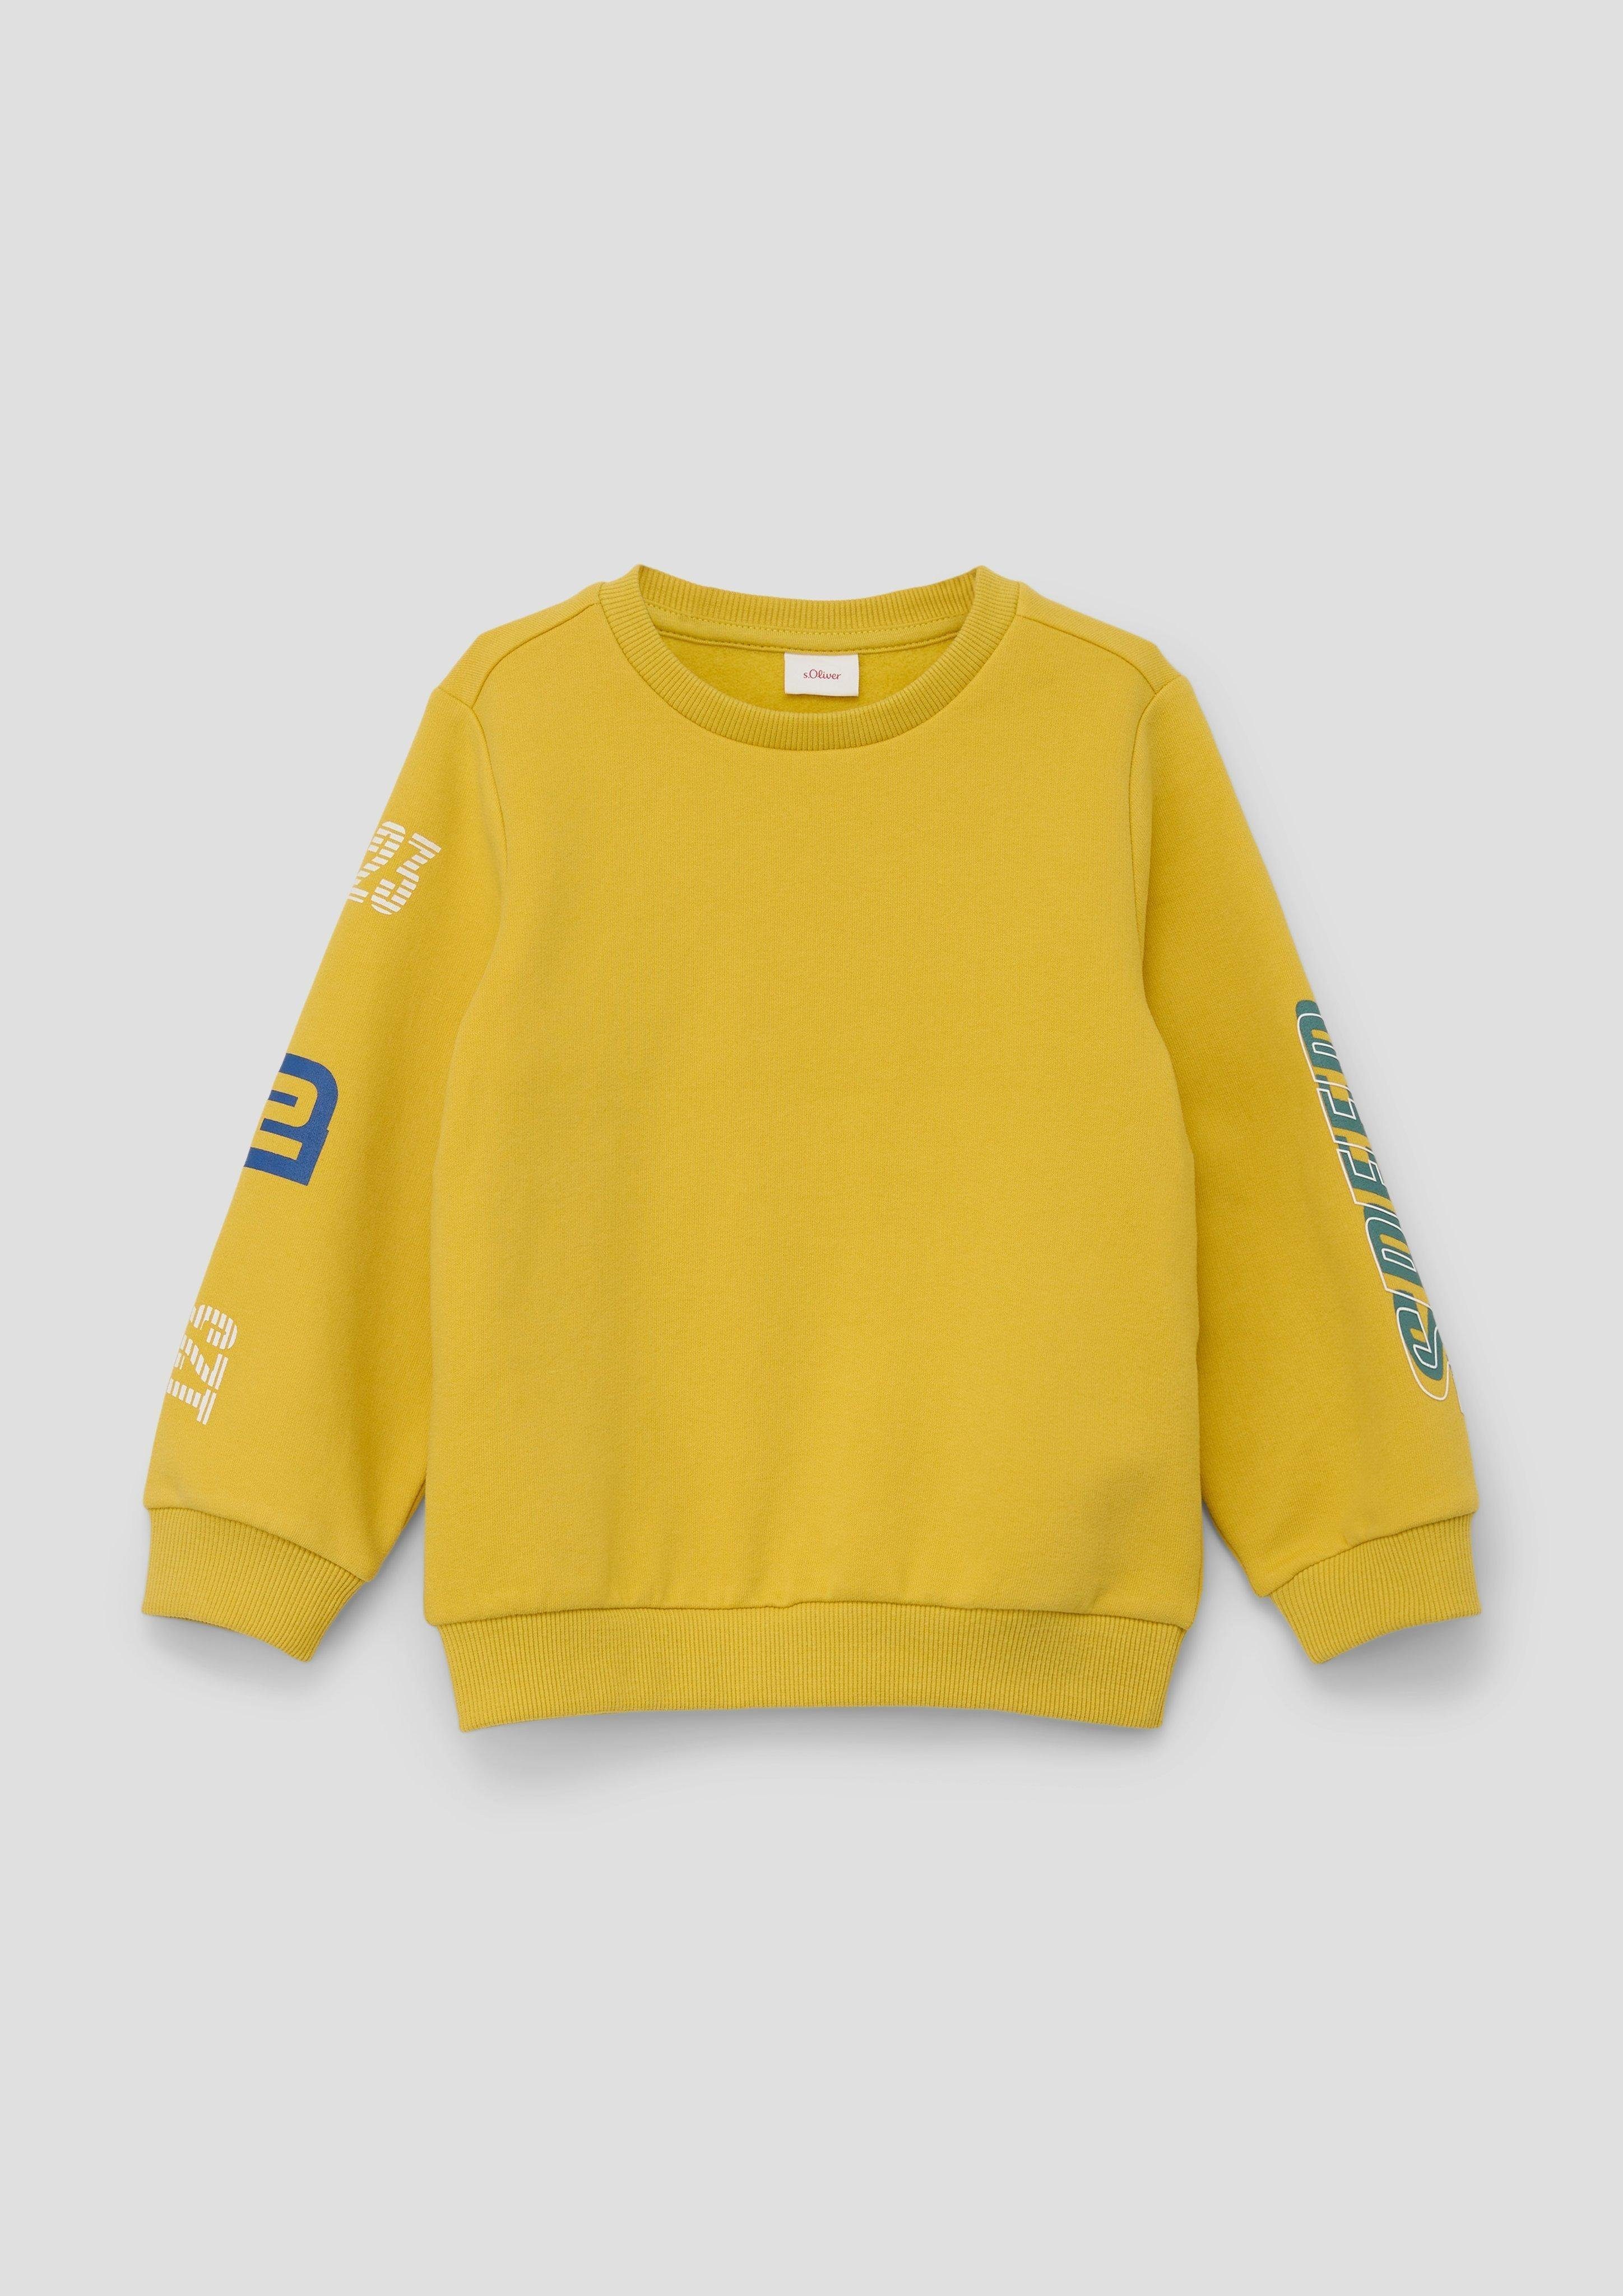 Sweatshirt Baumwollmix Sweatshirt gelb s.Oliver aus